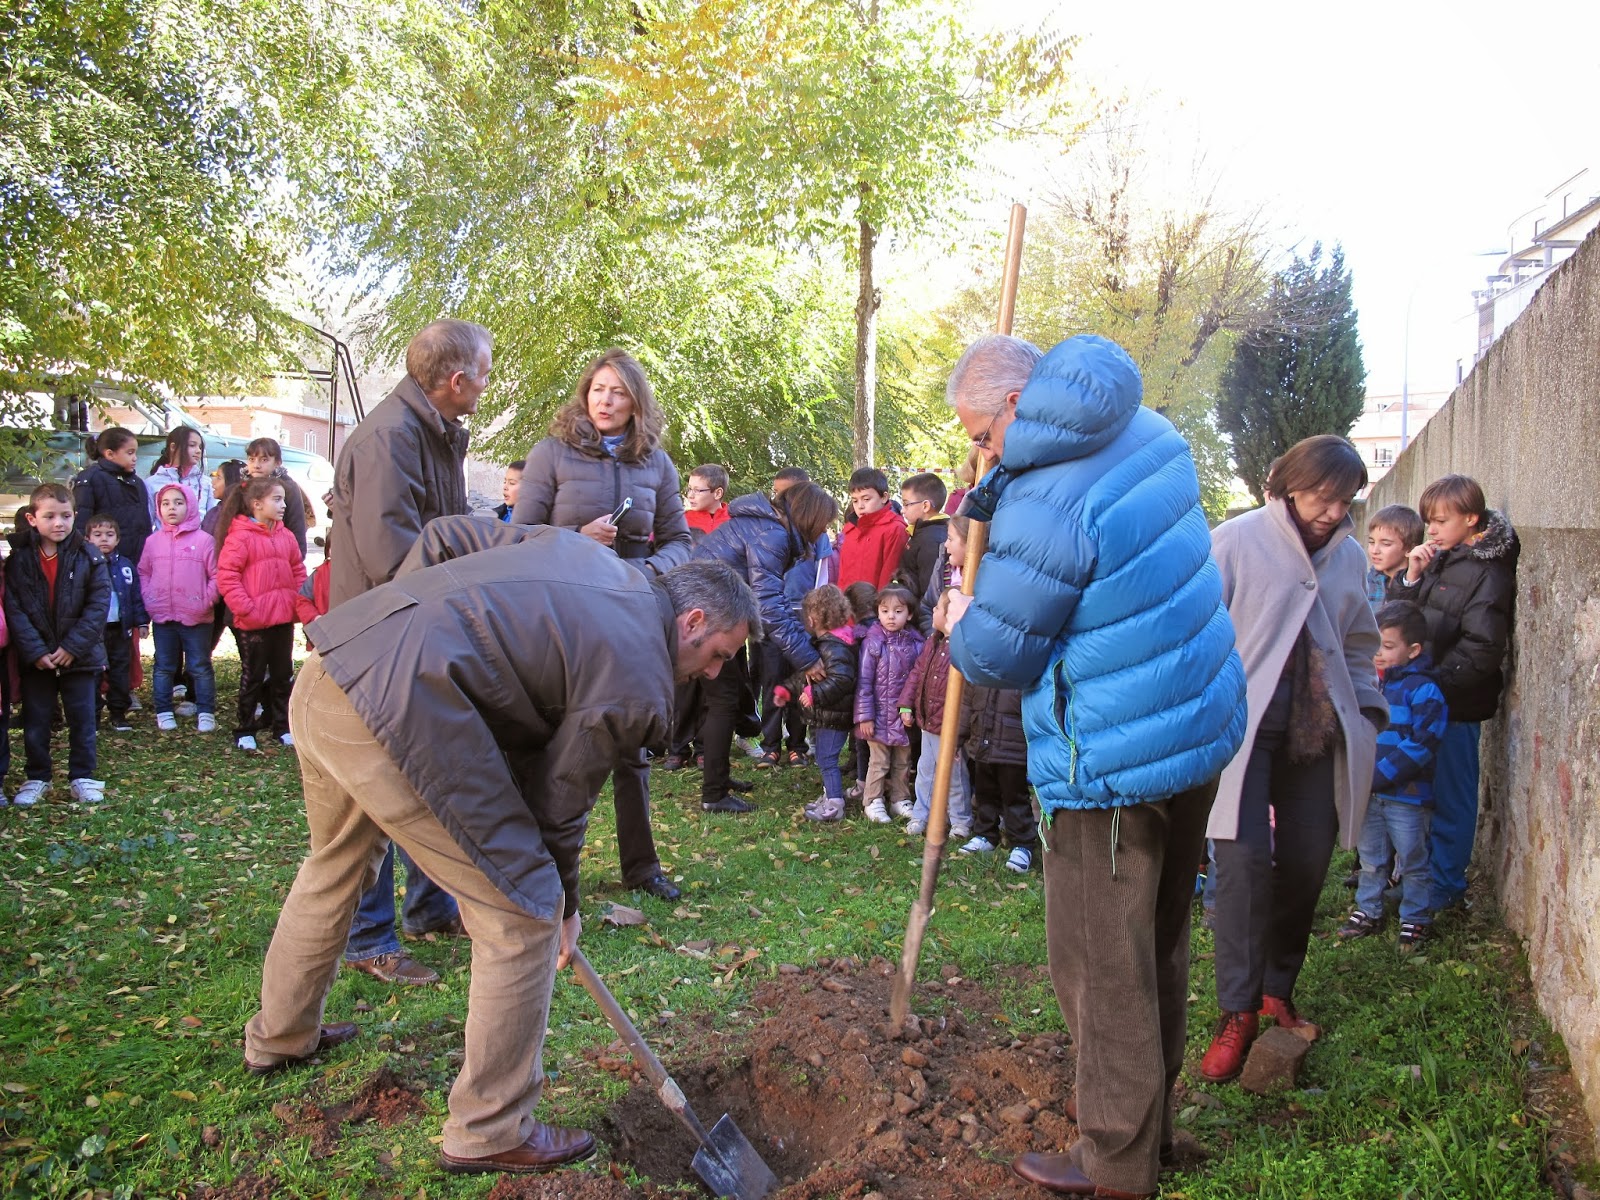 La Universidad de Salamanca pone en marcha un proyecto piloto de creación de una red de huertos escolares comunitarios